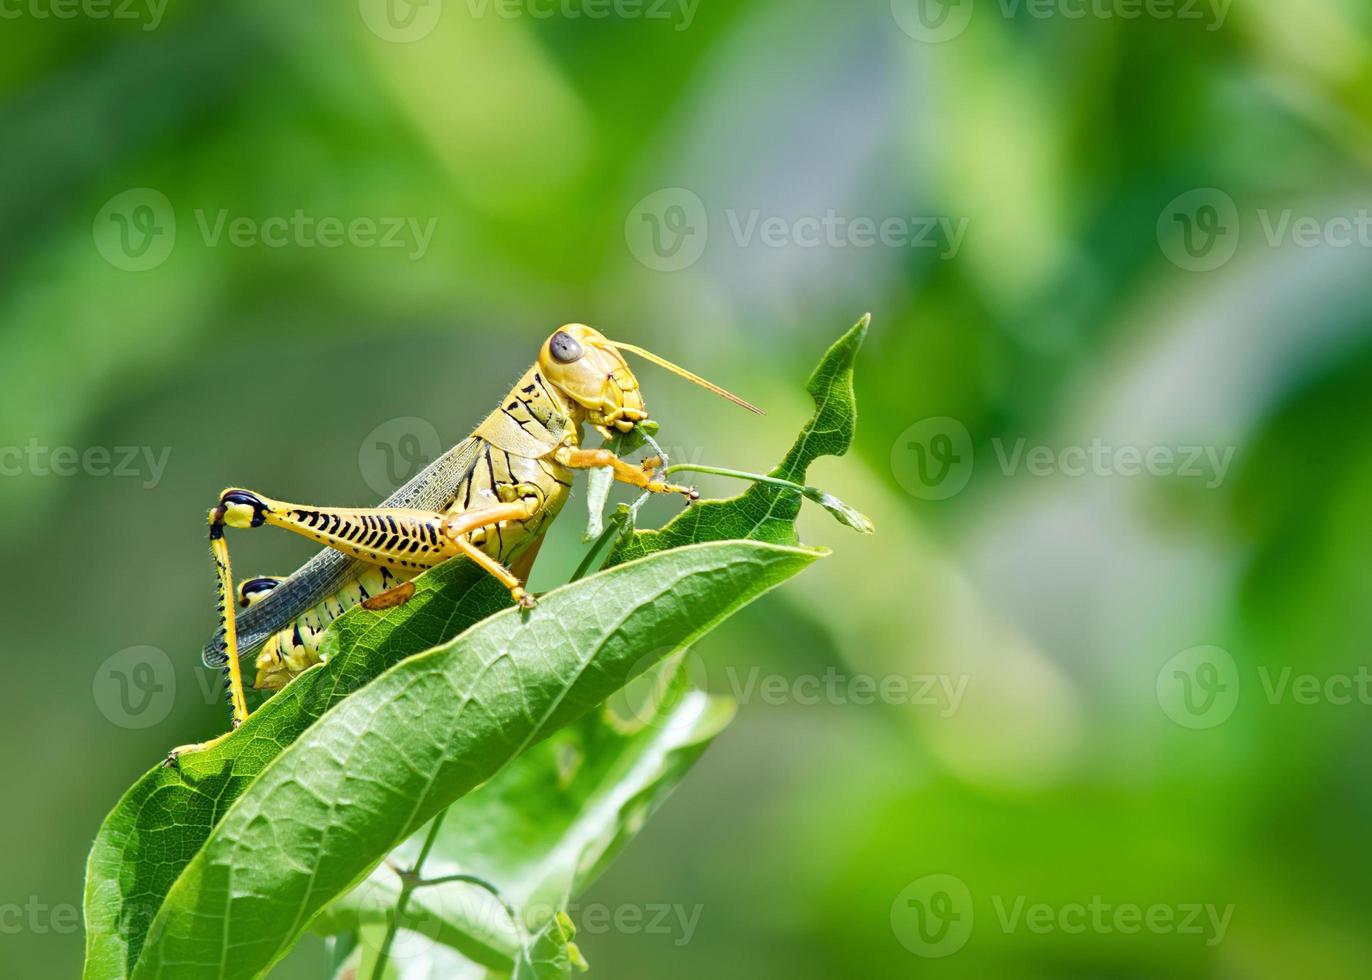 gräshoppa som äter och förstör blad foto